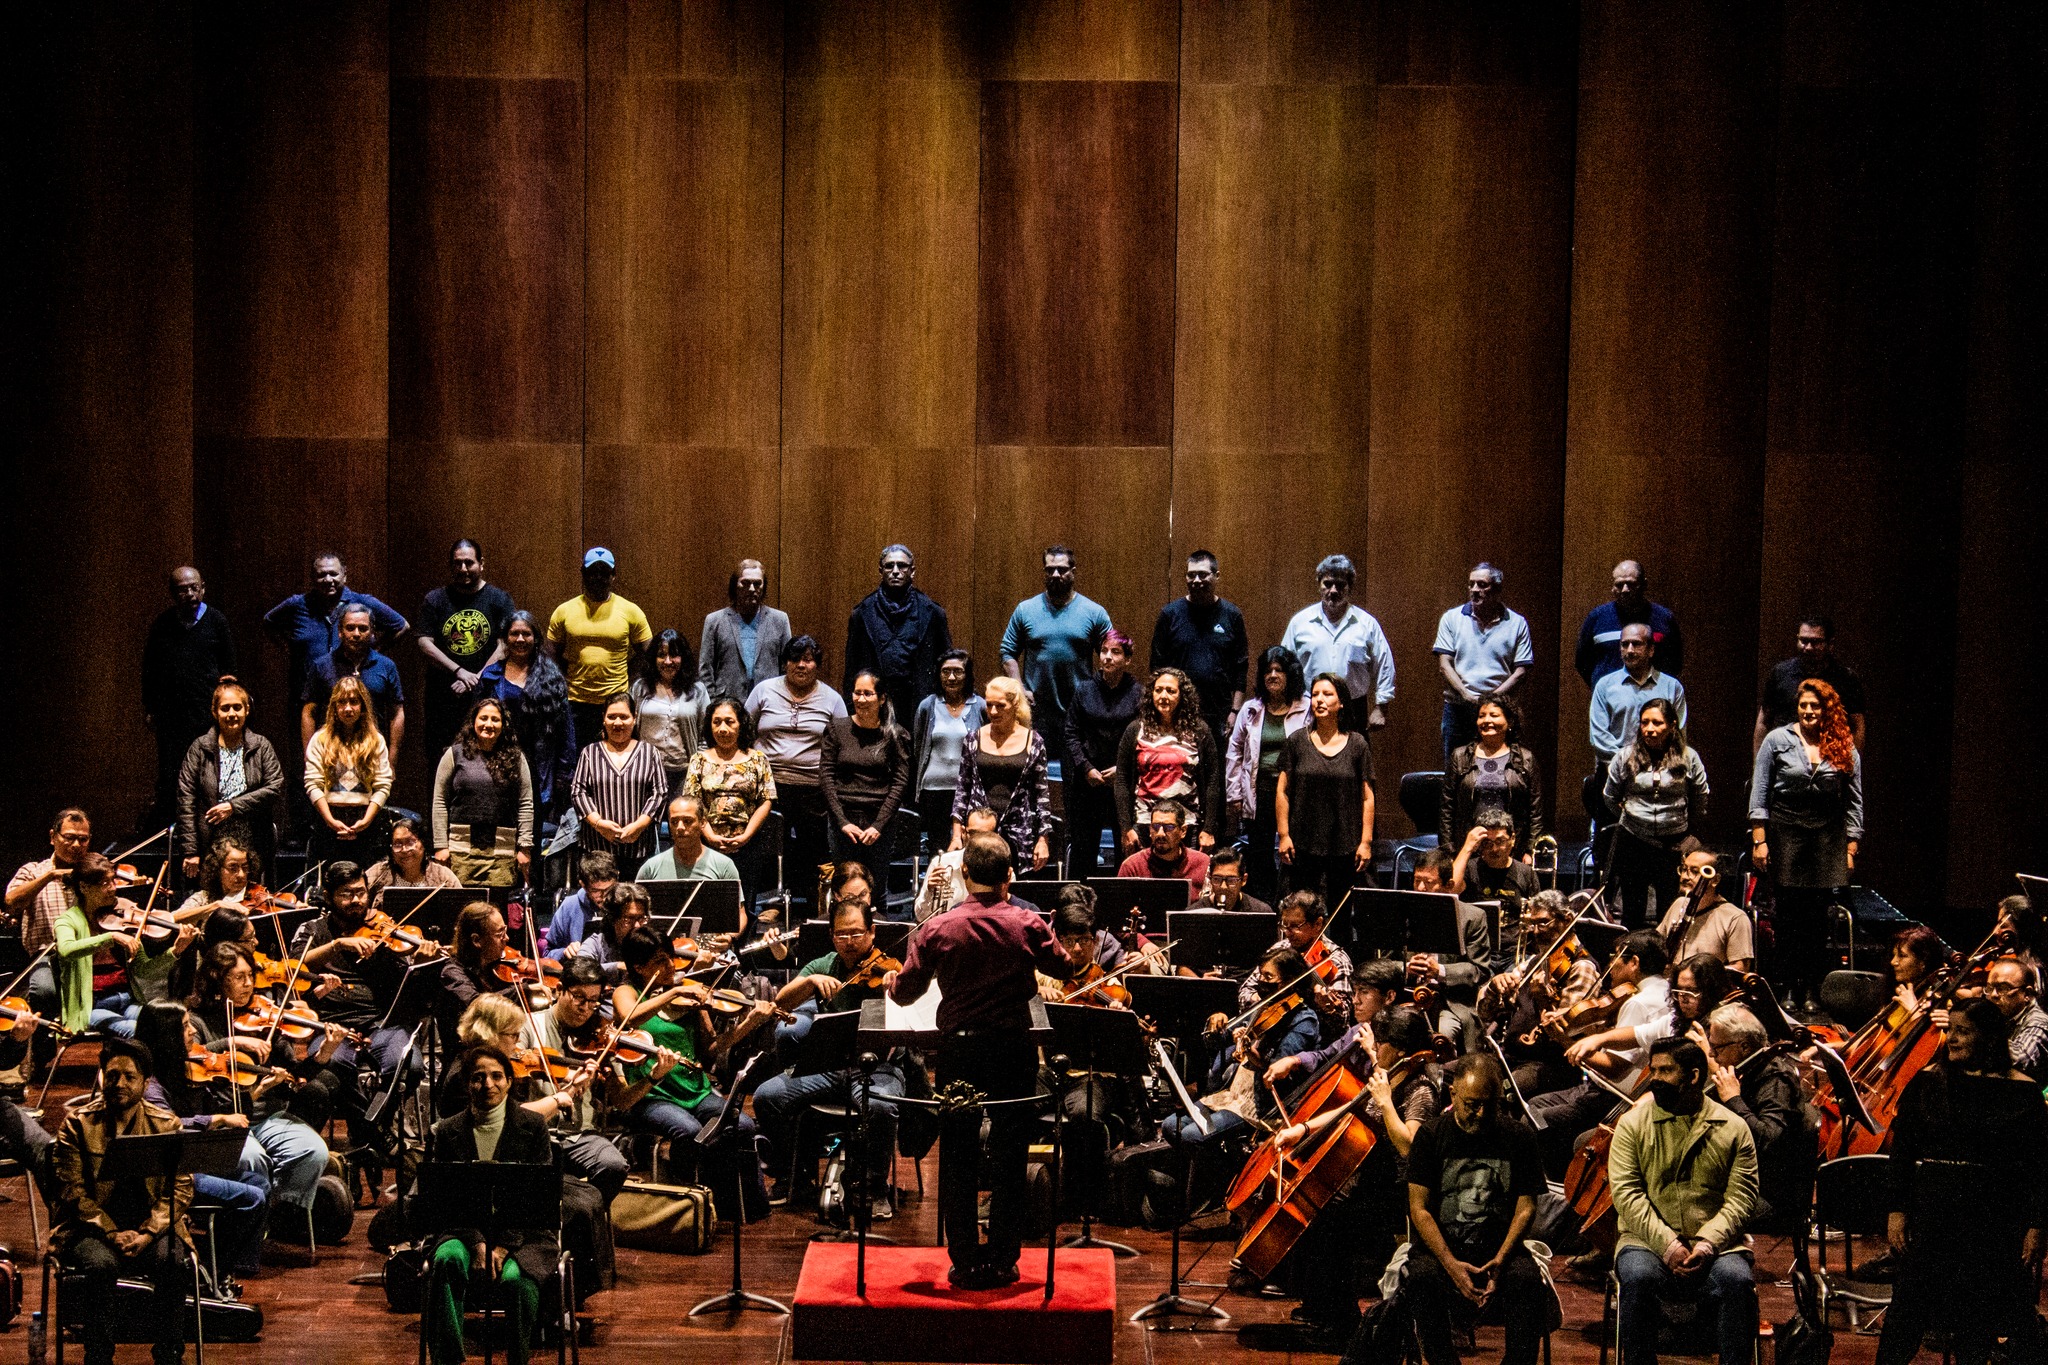 Coro Nacional del Perú y Orquesta Sinfónica Nacional del Perú ofrecieron un exitoso ensayo abierto de "La Perricholi"